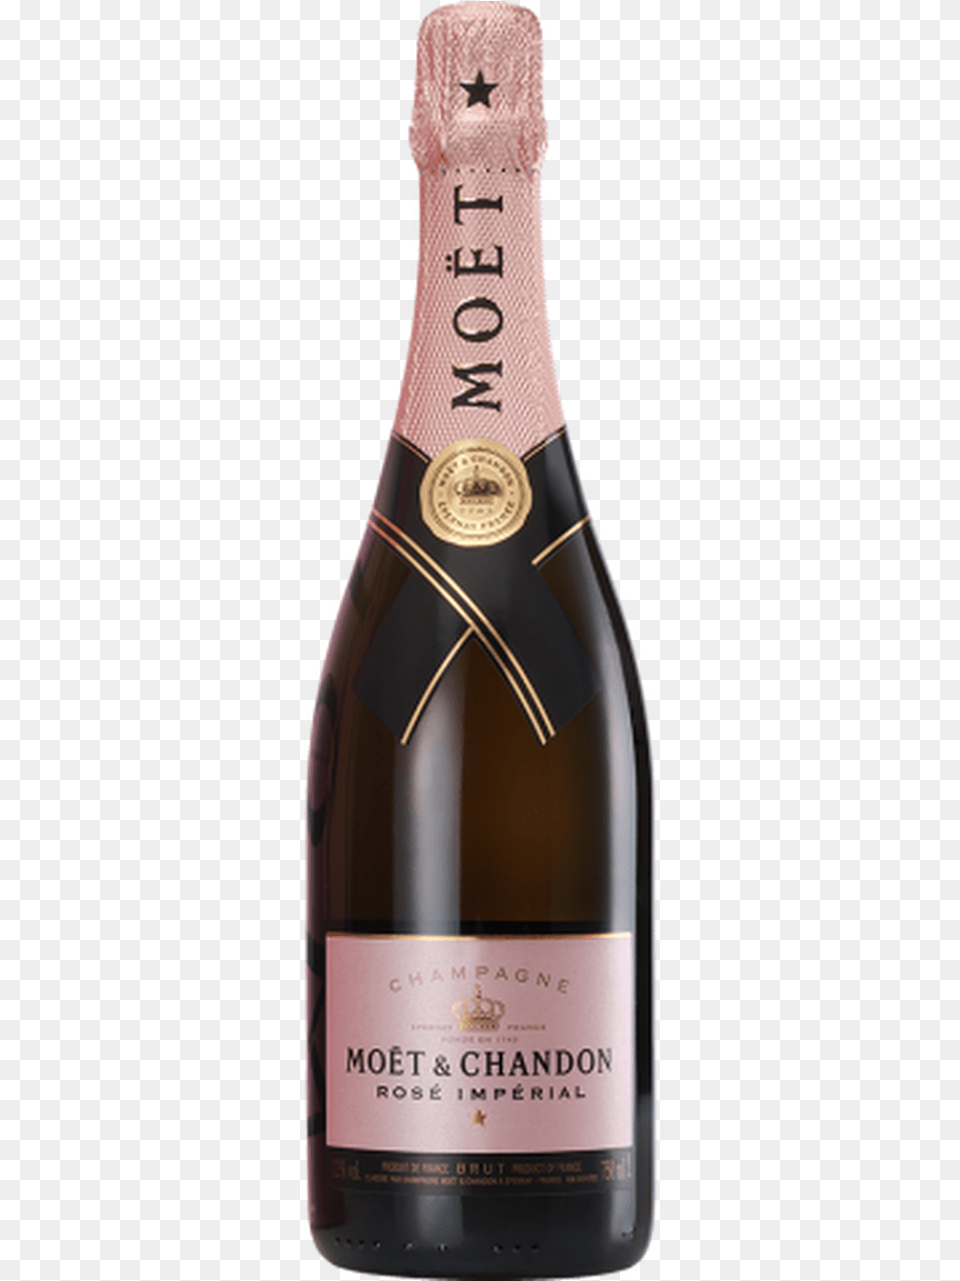 Moet Amp Chandon Champagne Imperial Rose, Alcohol, Beverage, Bottle, Liquor Png Image